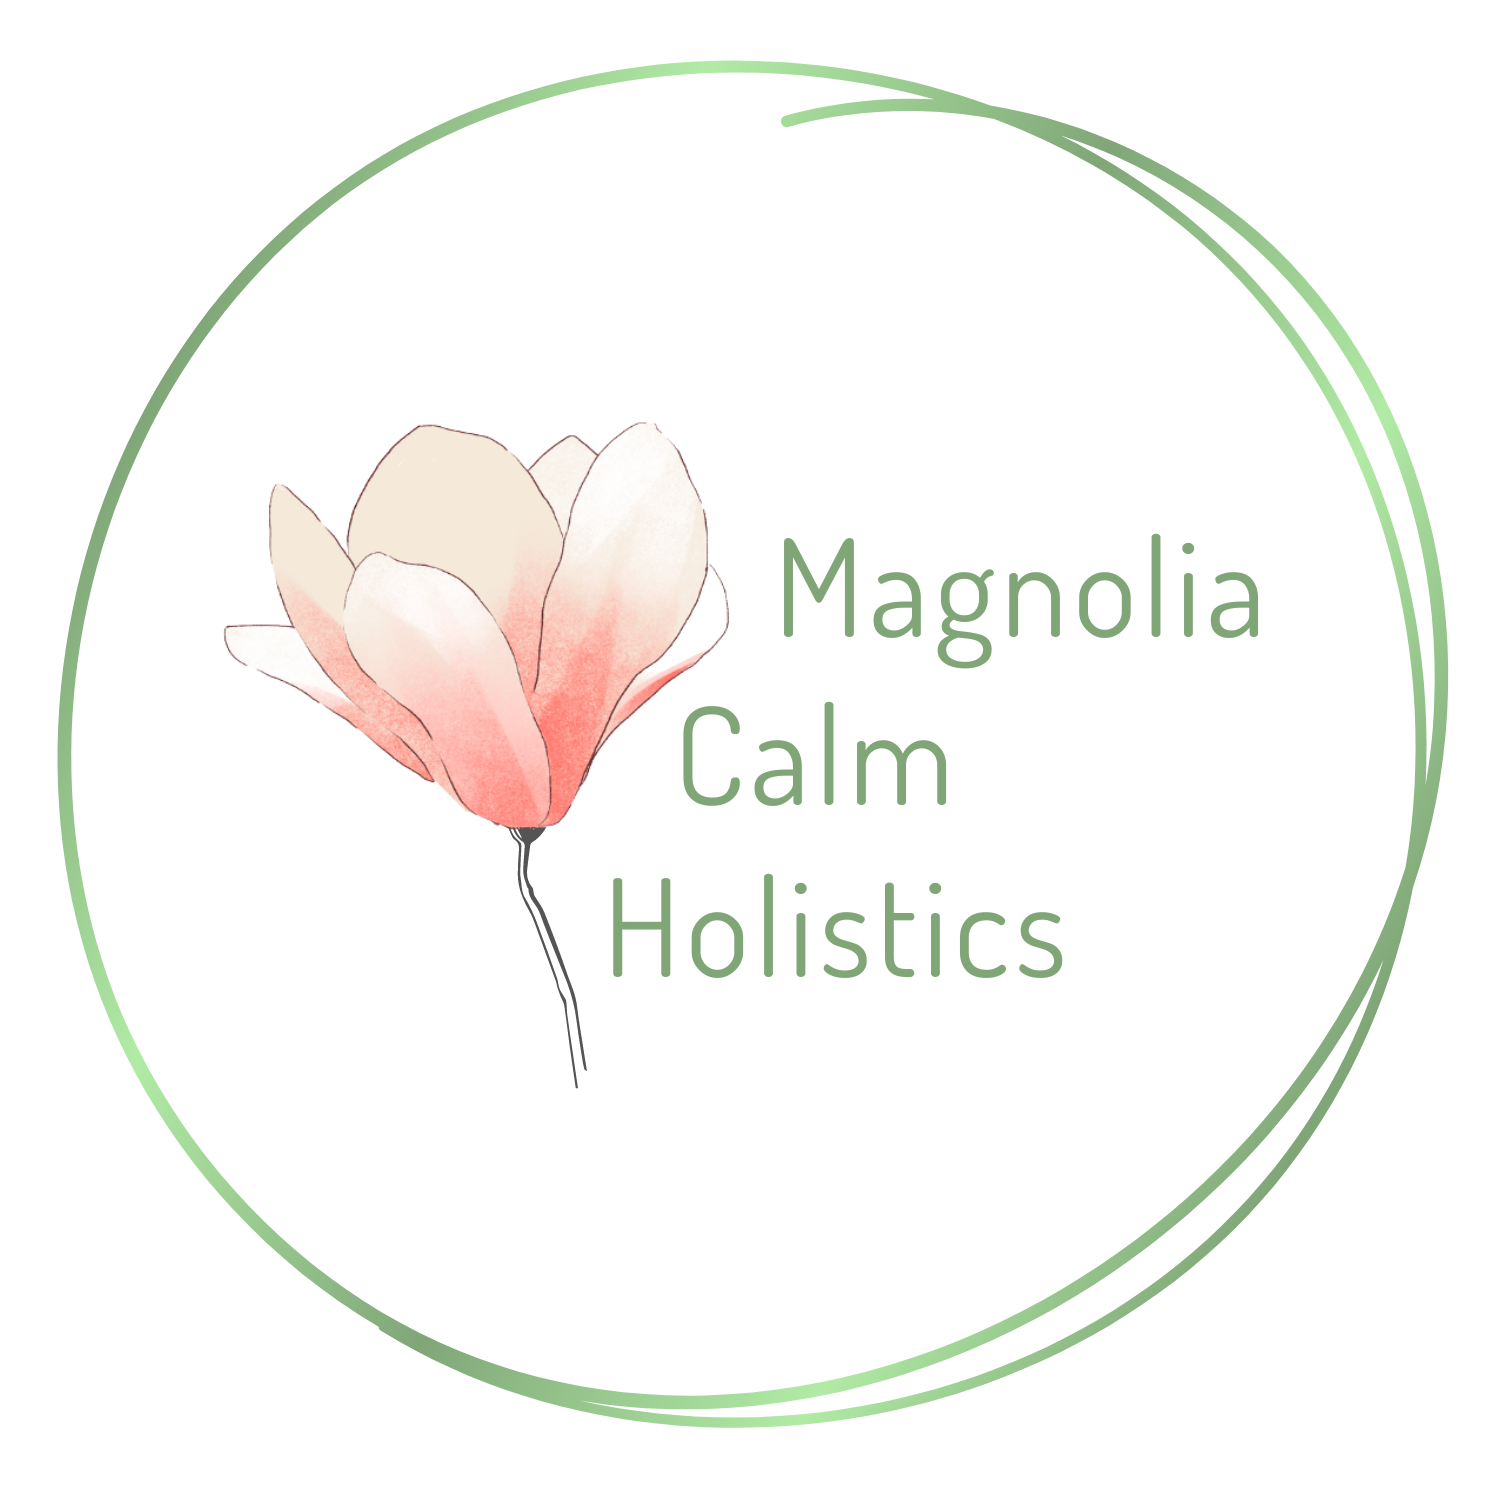 Magnolia Calm Holistics - final logo (3).png